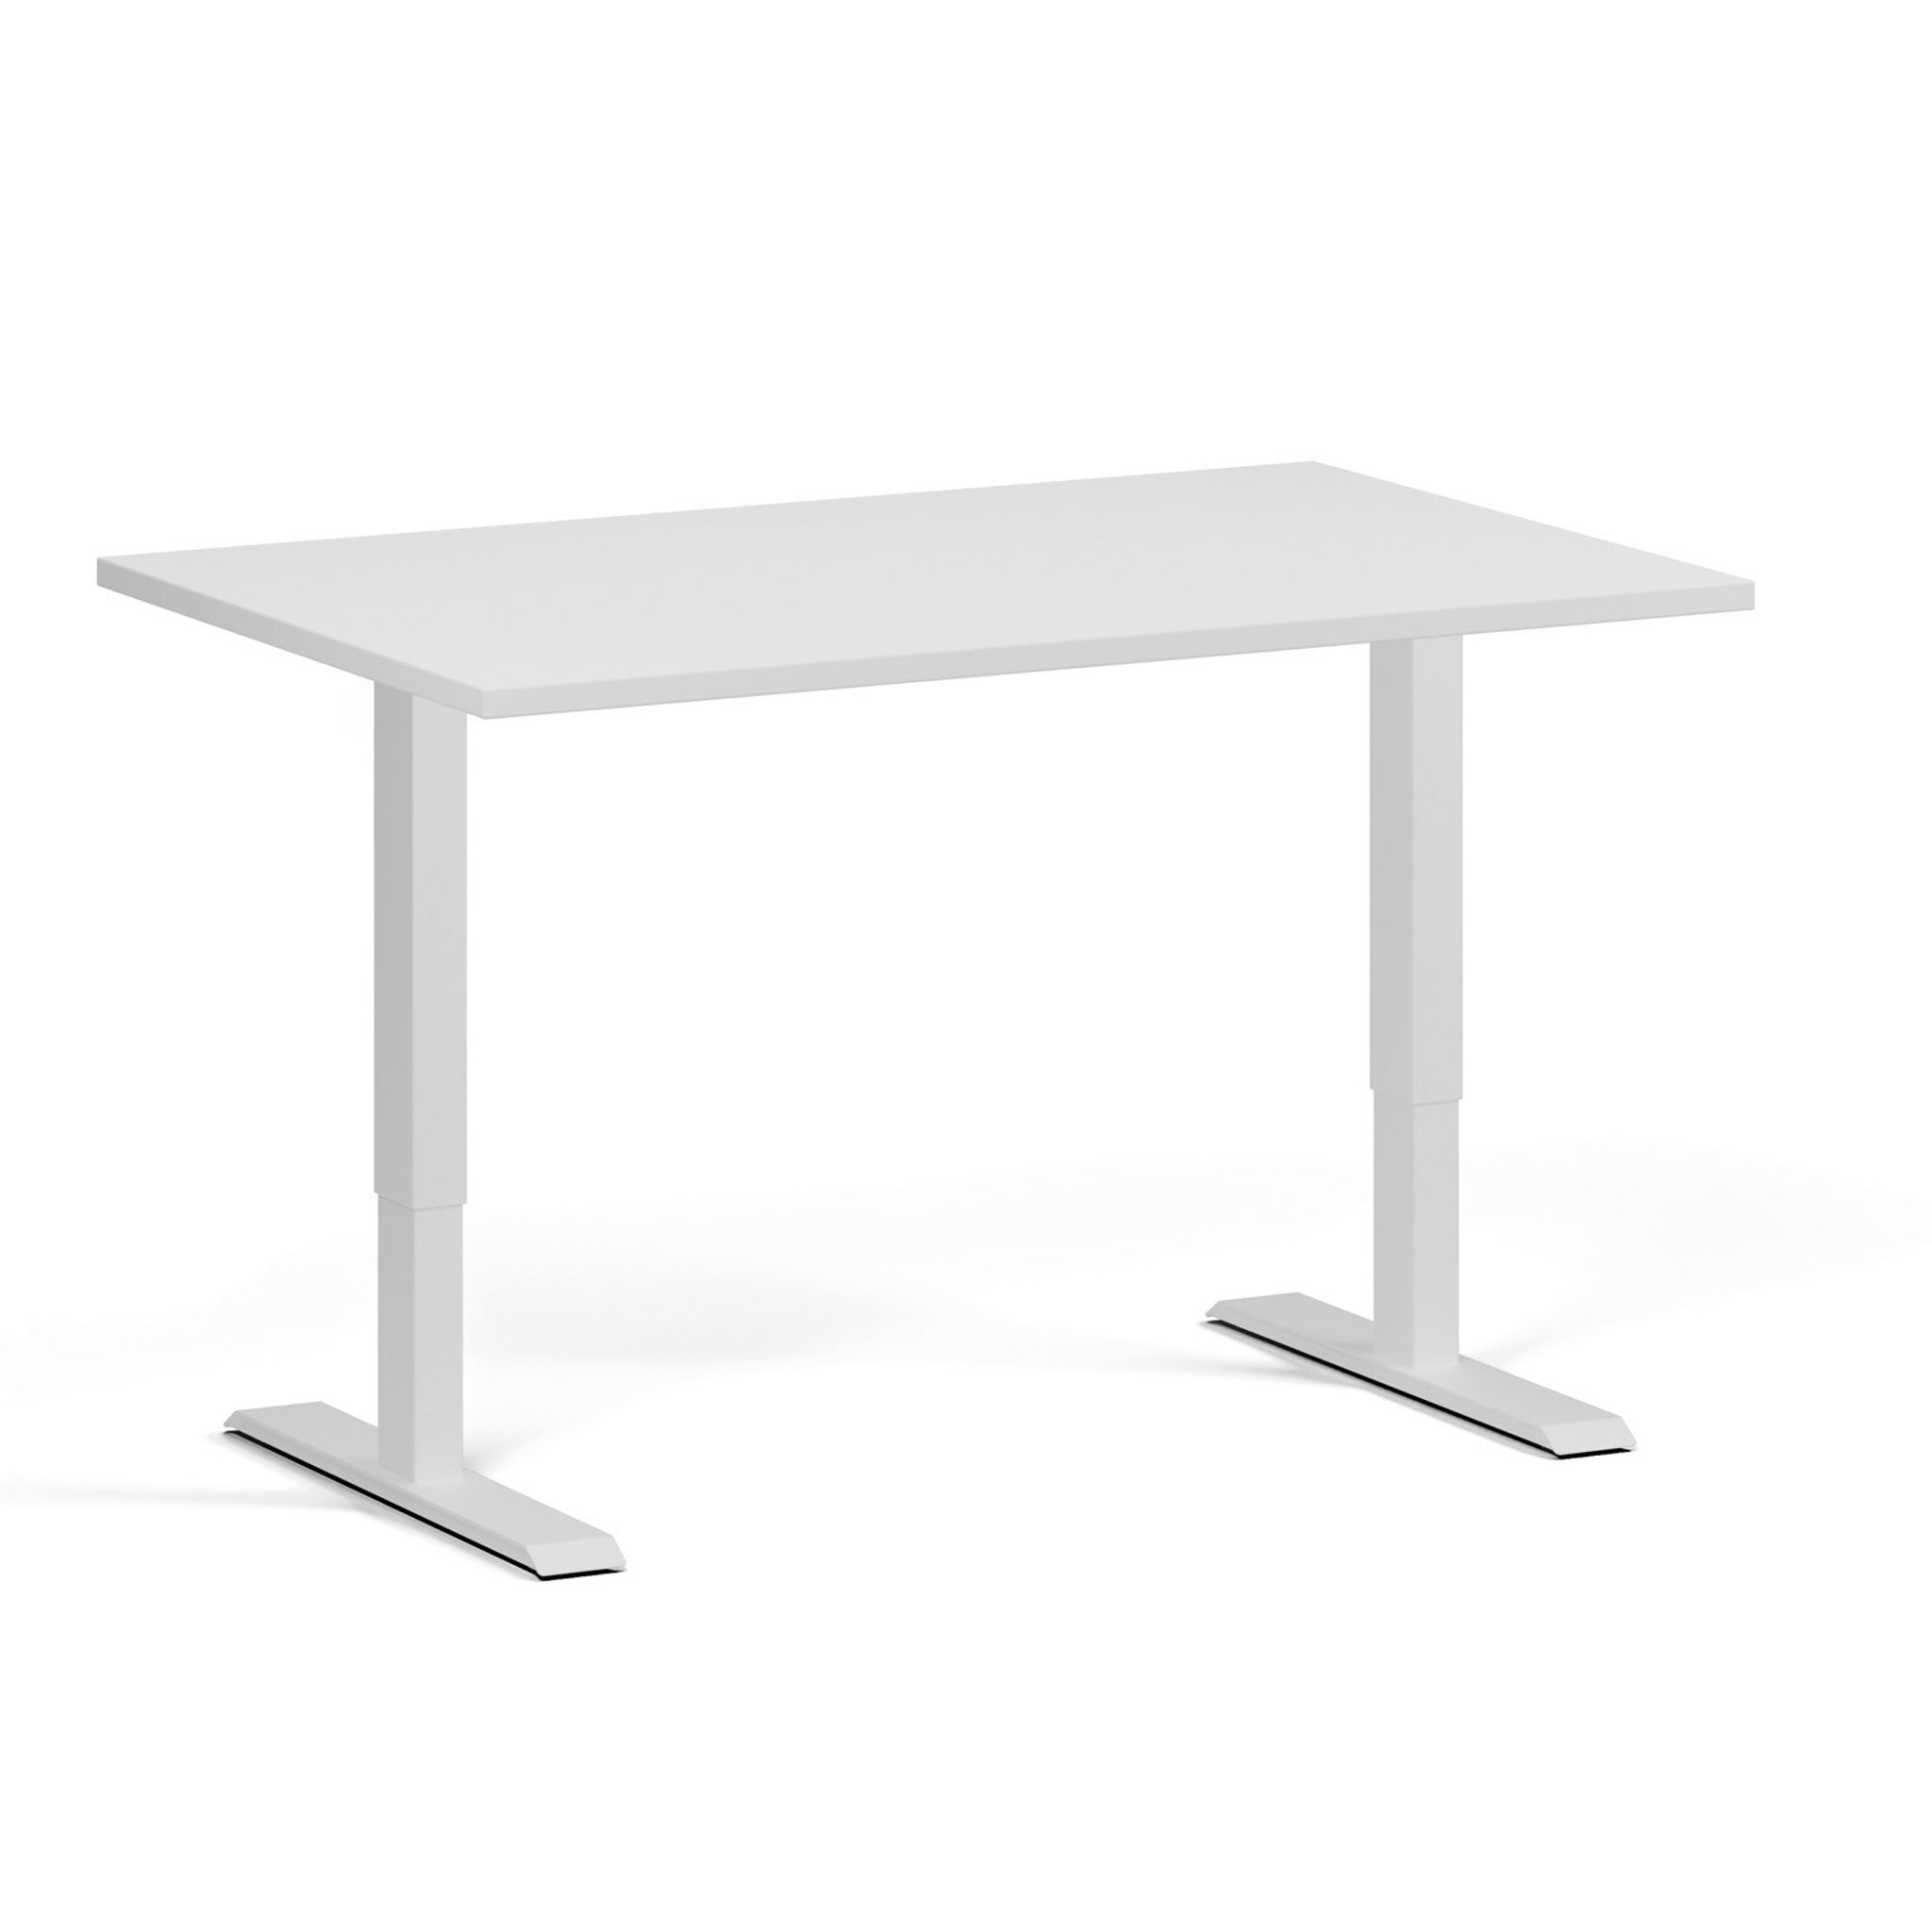 Výškově nastavitelný stůl, 1 motor, 745 - 1235 mm, deska 1200 x 800 mm, bílá podnož, bílá